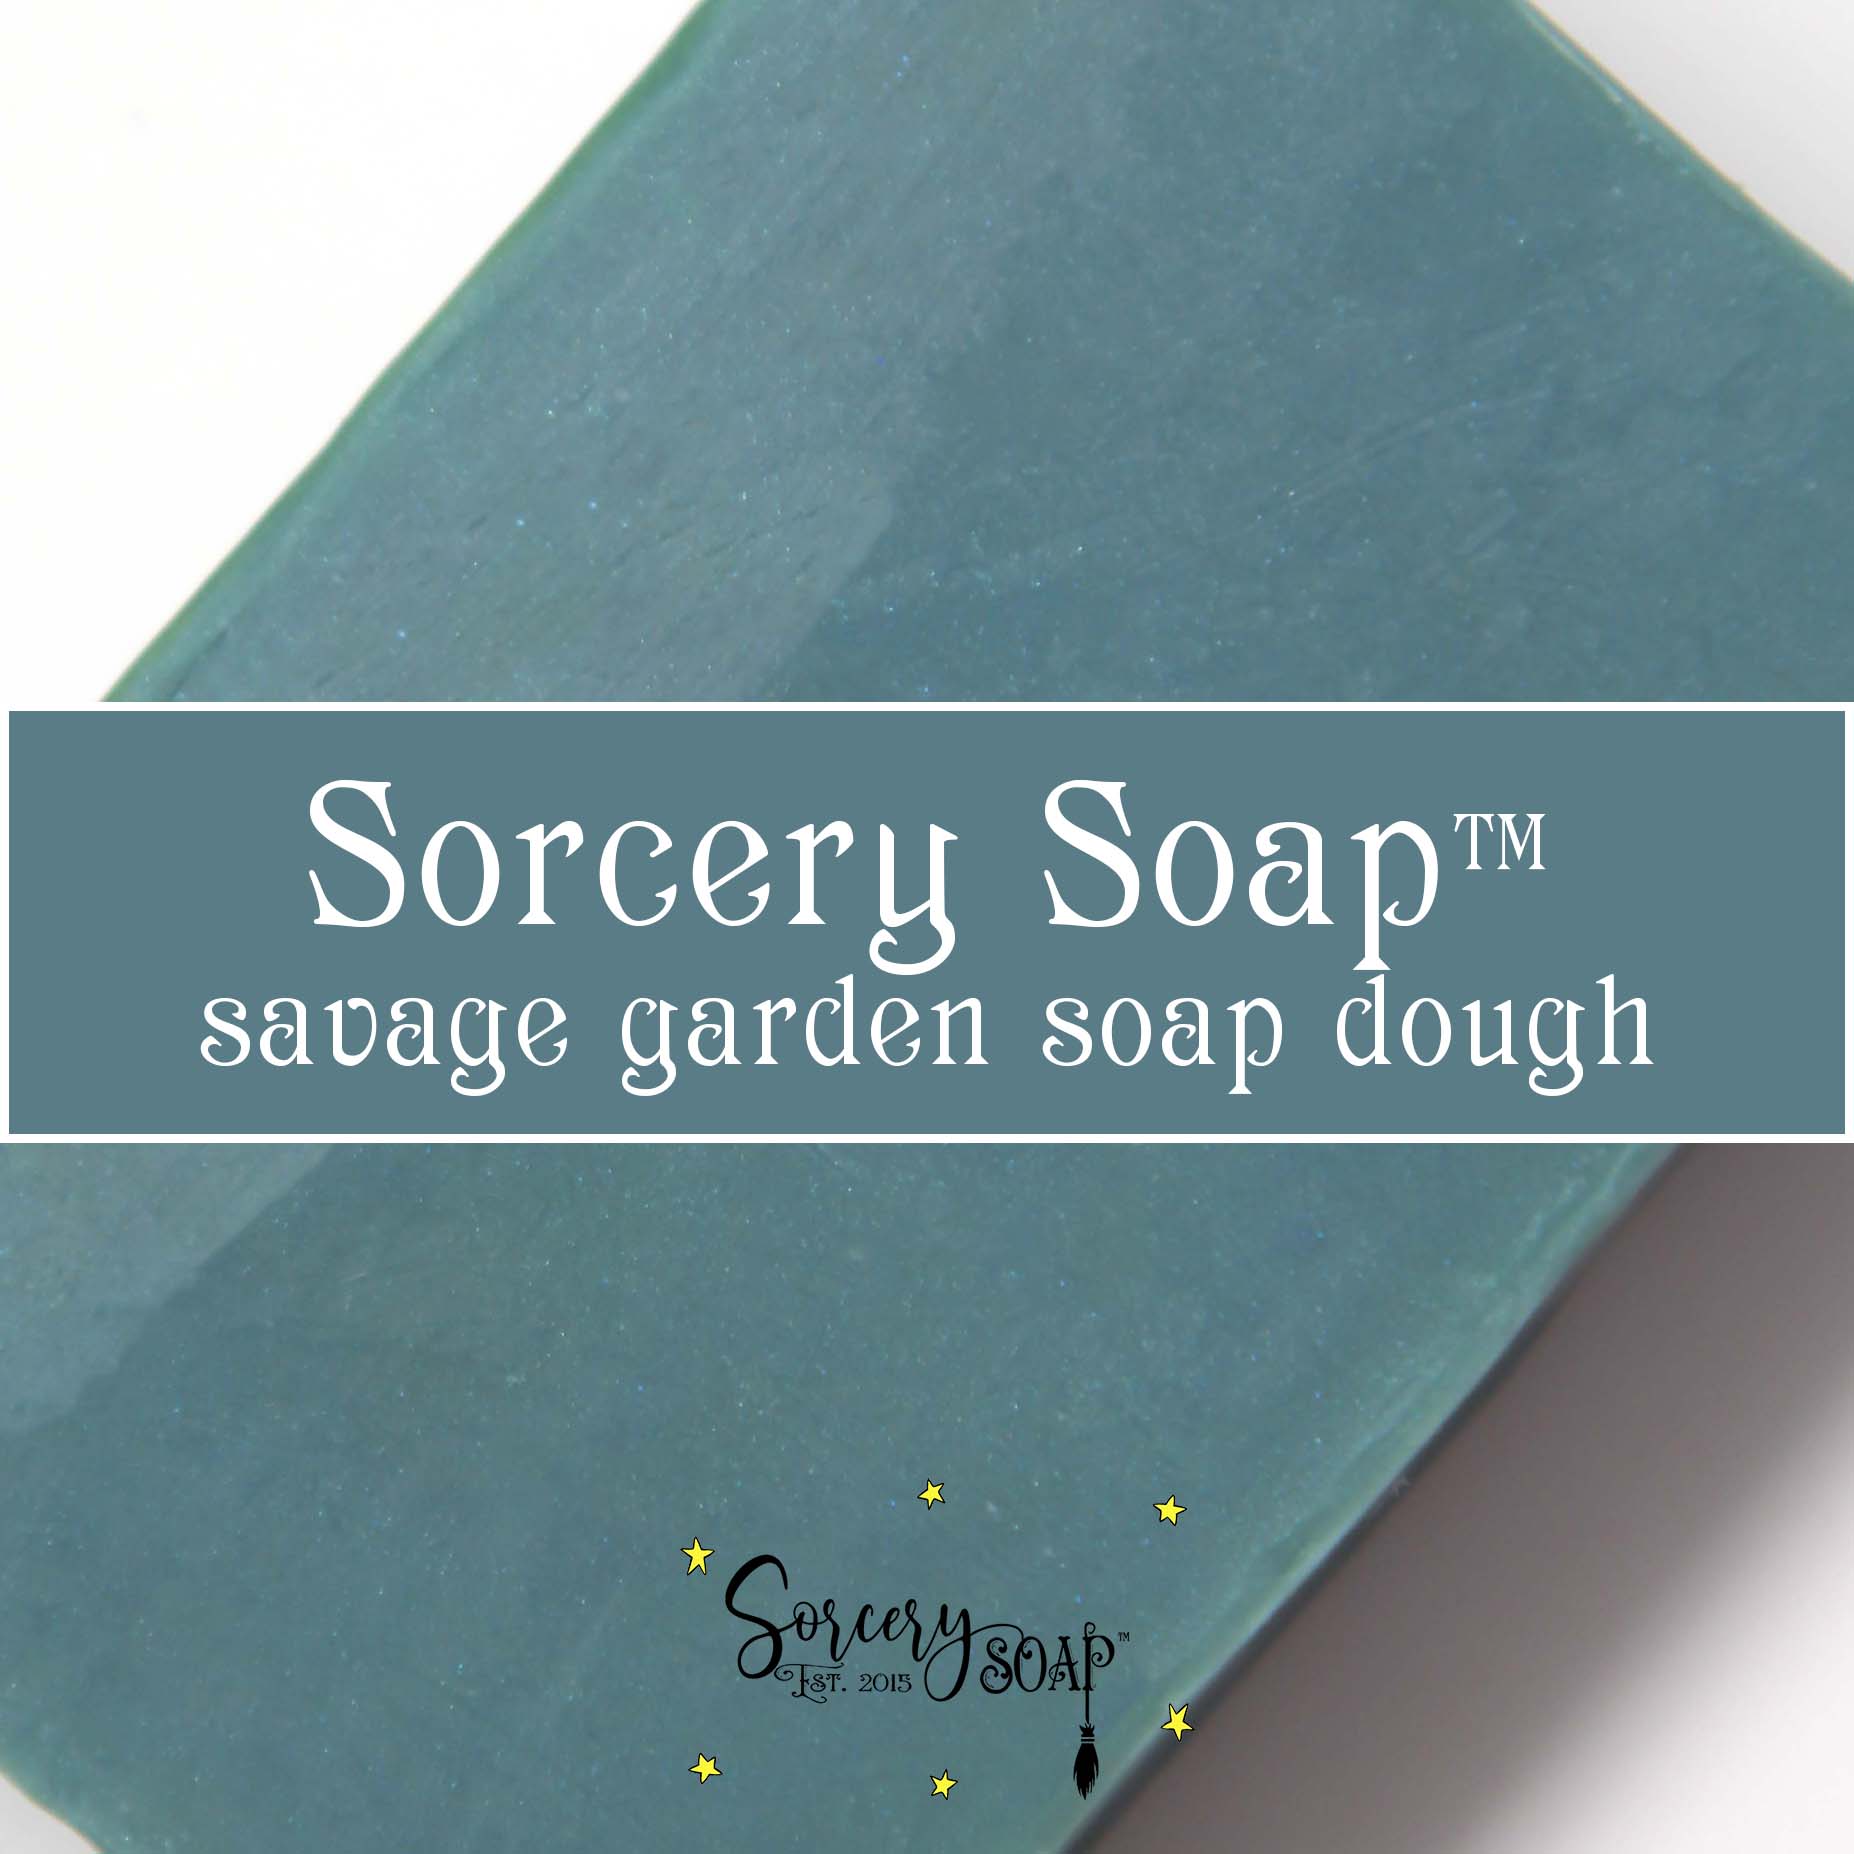 Savage Garden Green Soap Dough